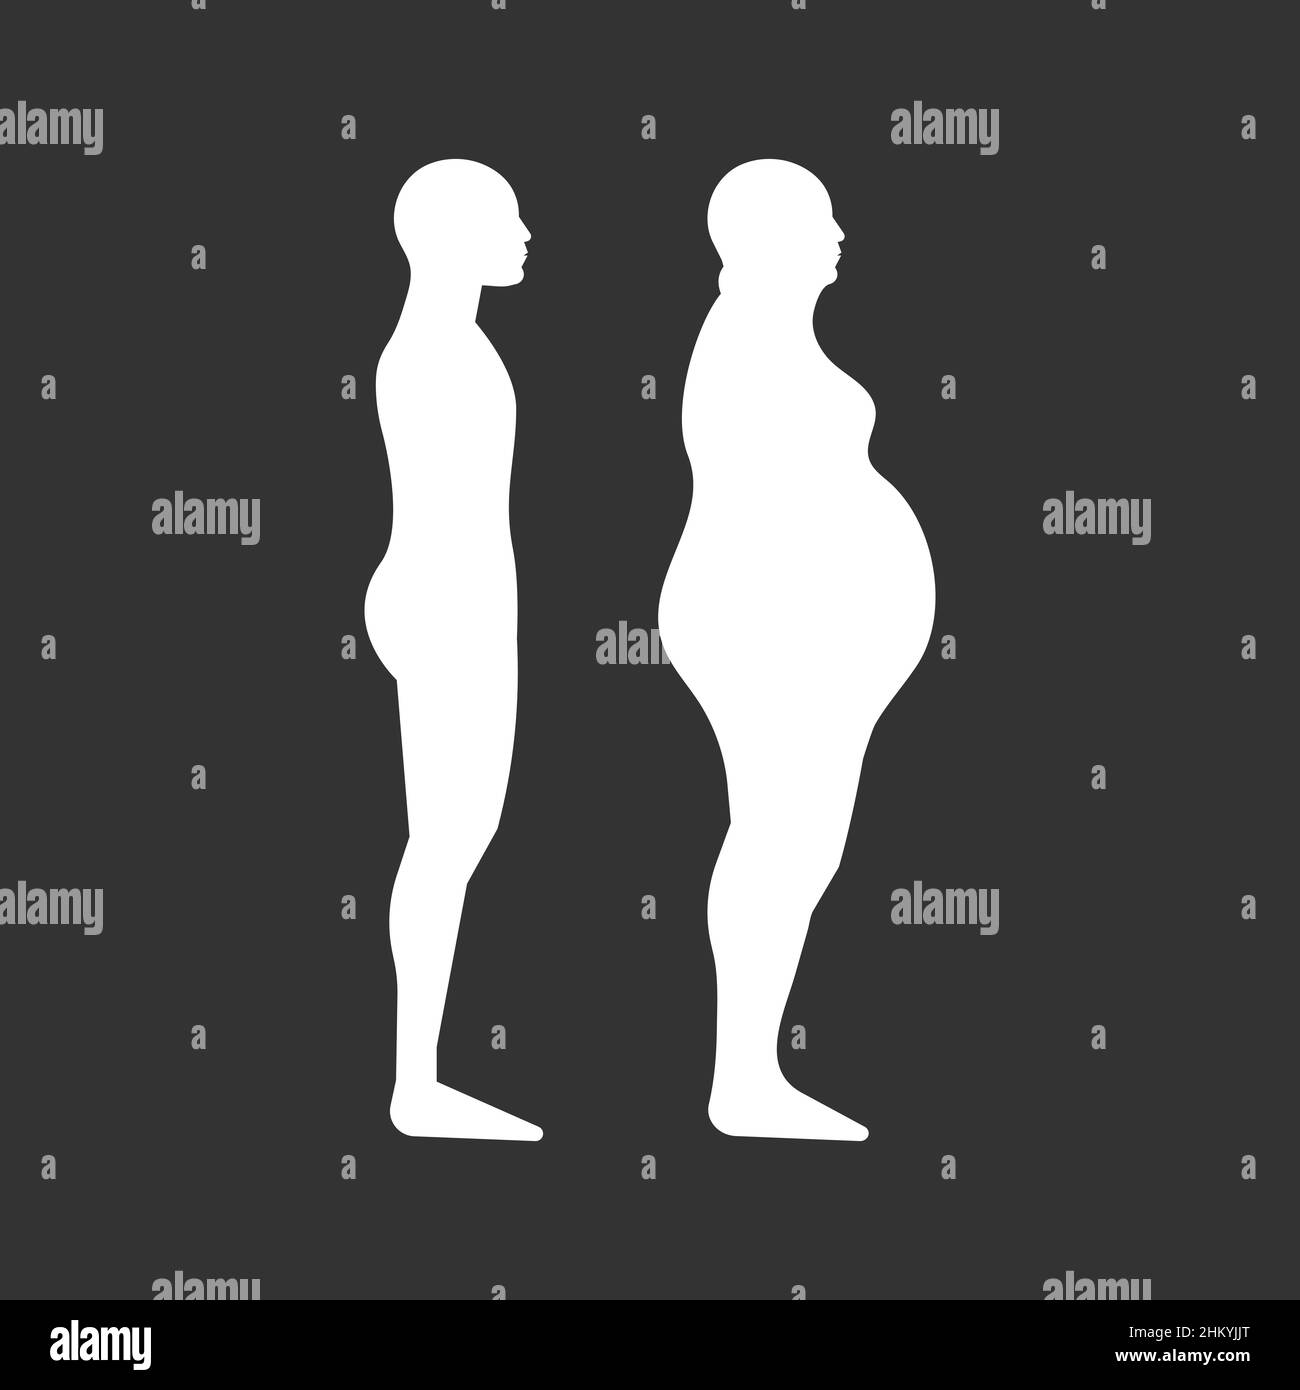 Stadi di obesità dell'uomo. Silhouette di persona con età diversa da sottile a sovrappeso. Simbolo di sovrappeso. Illustrazione vettoriale Illustrazione Vettoriale